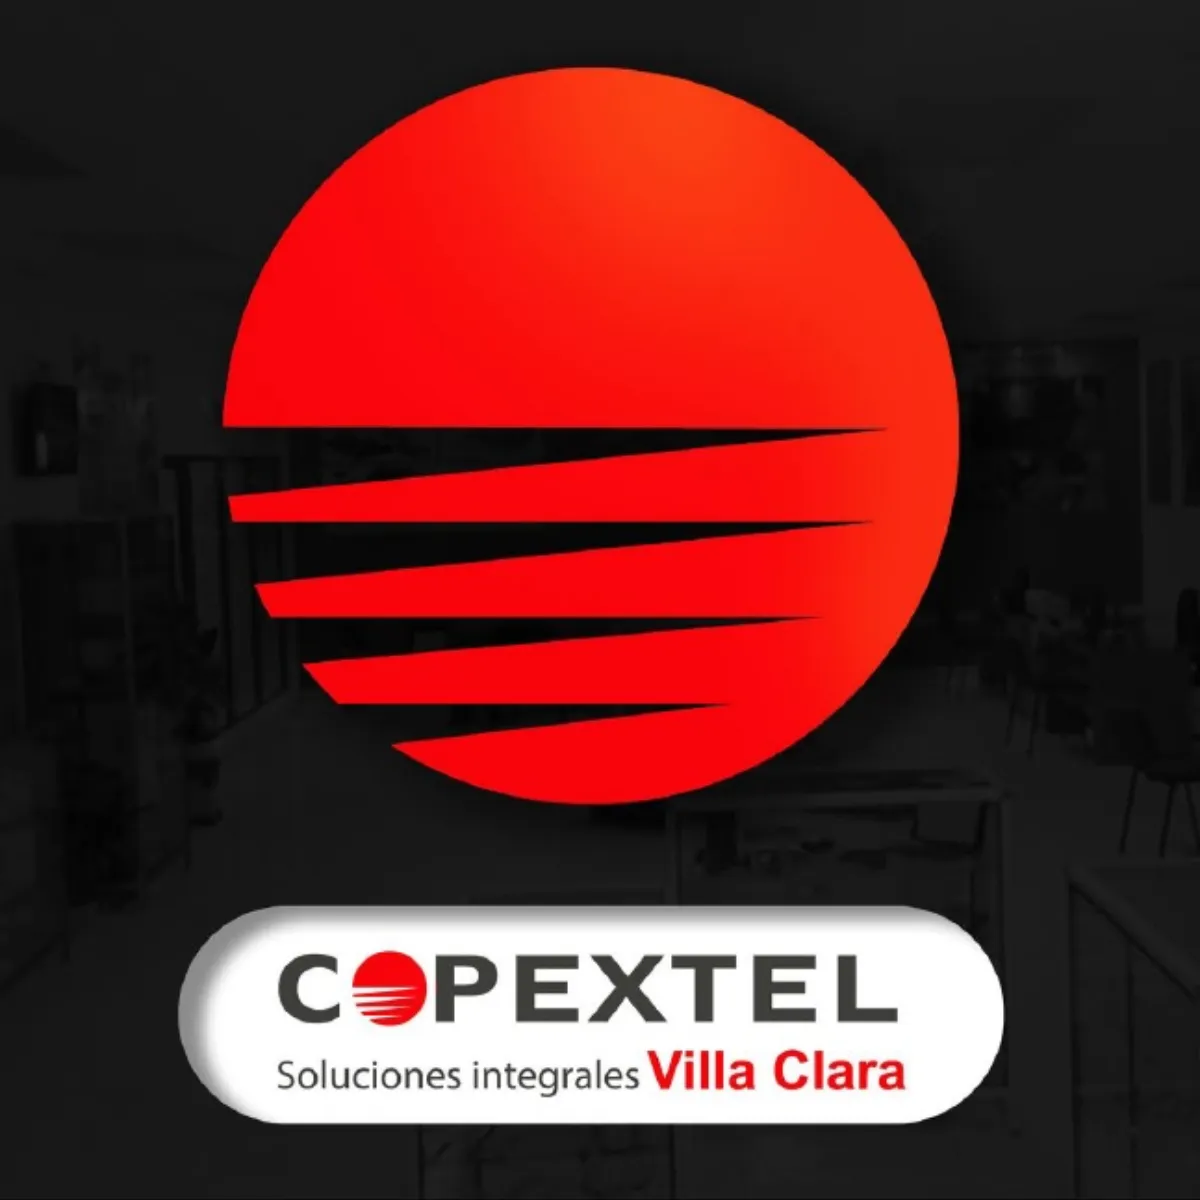 COPEXTEL Filial Villa Clara